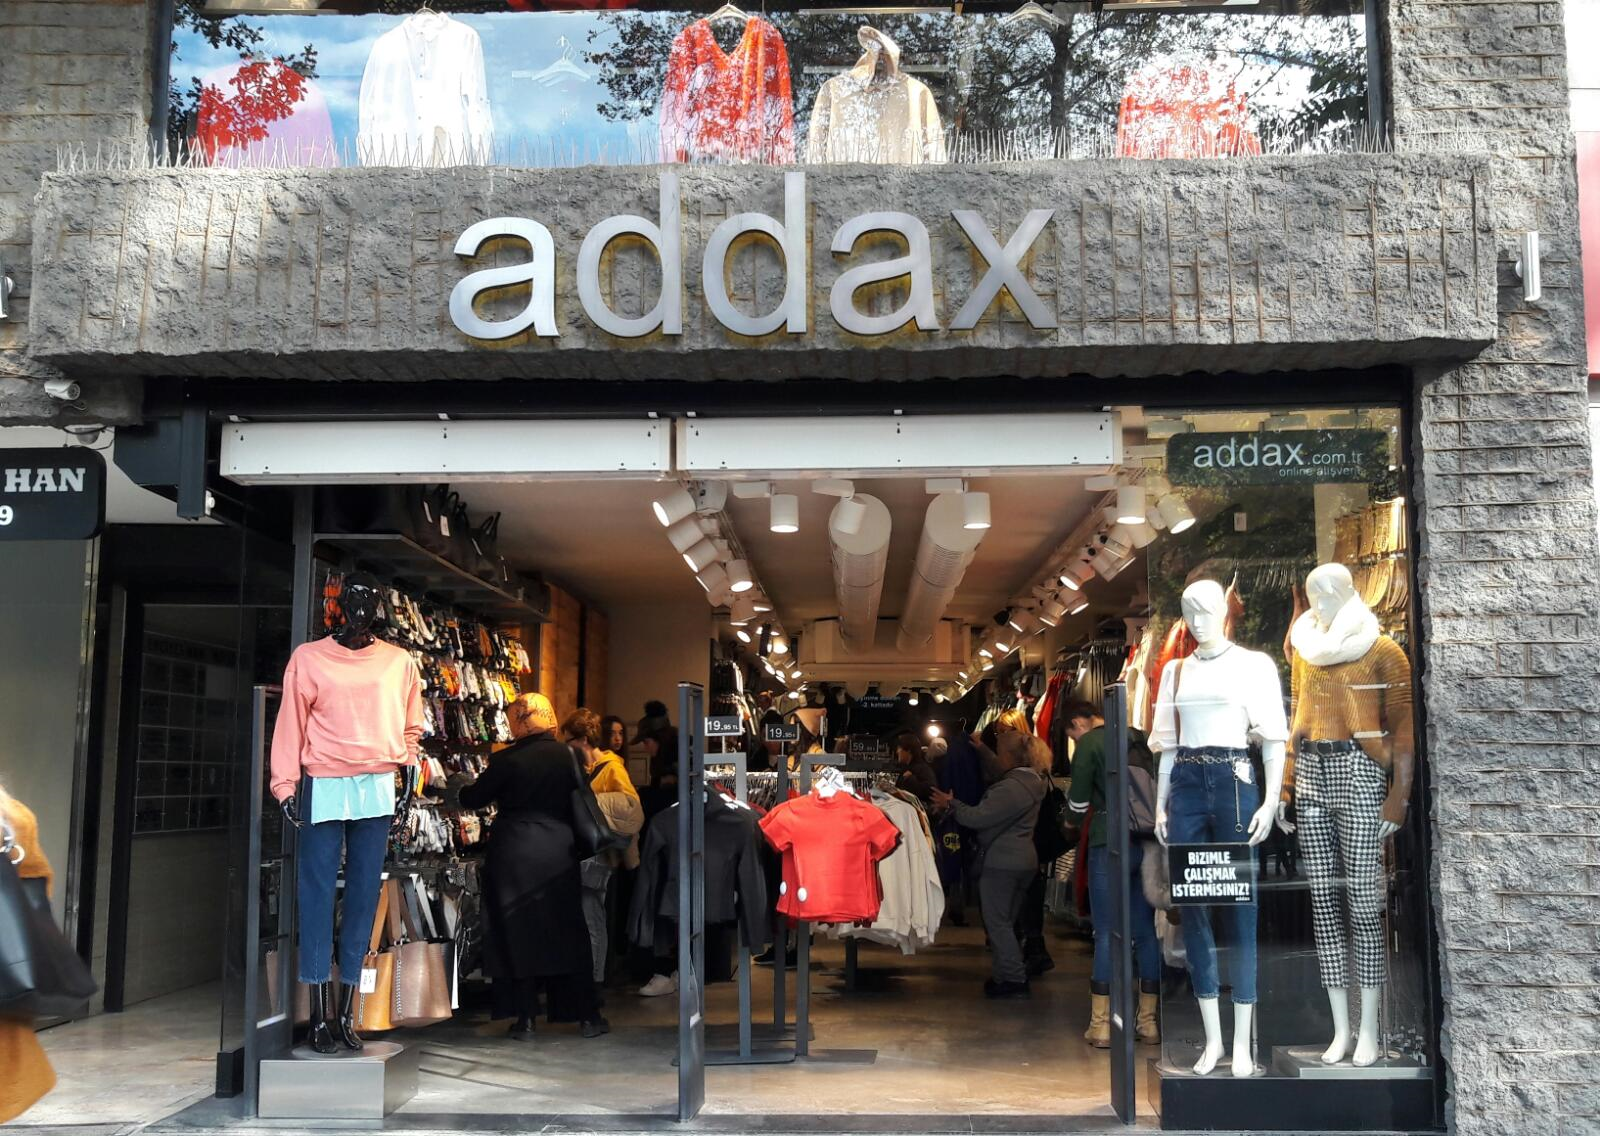 Addax - 3